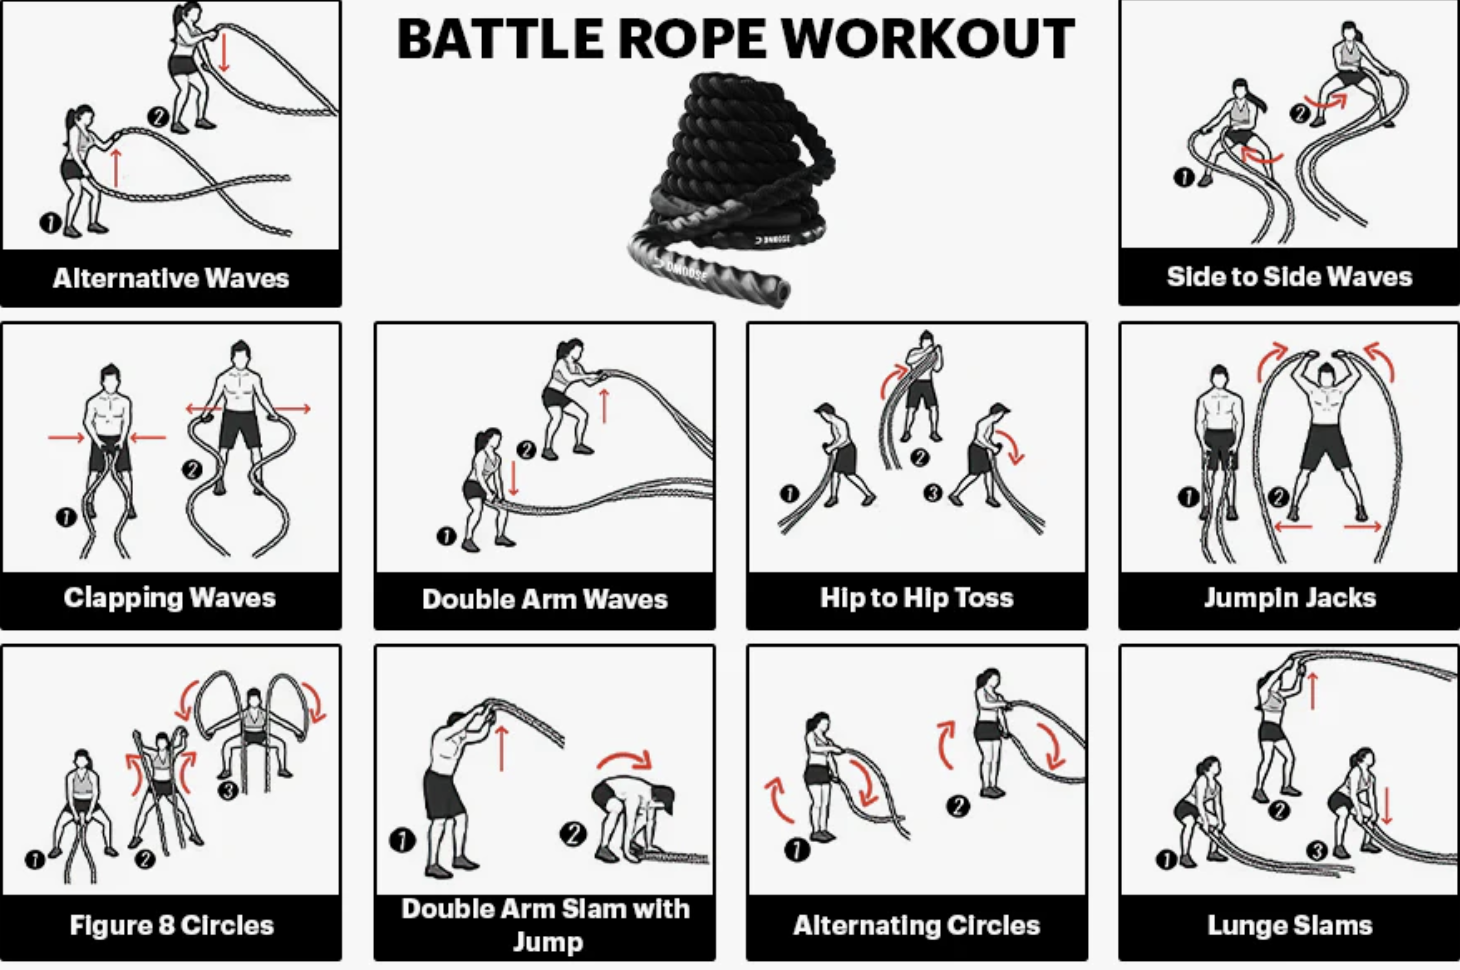 6 exercices avec une corde ondulatoire pour des résultats rapides